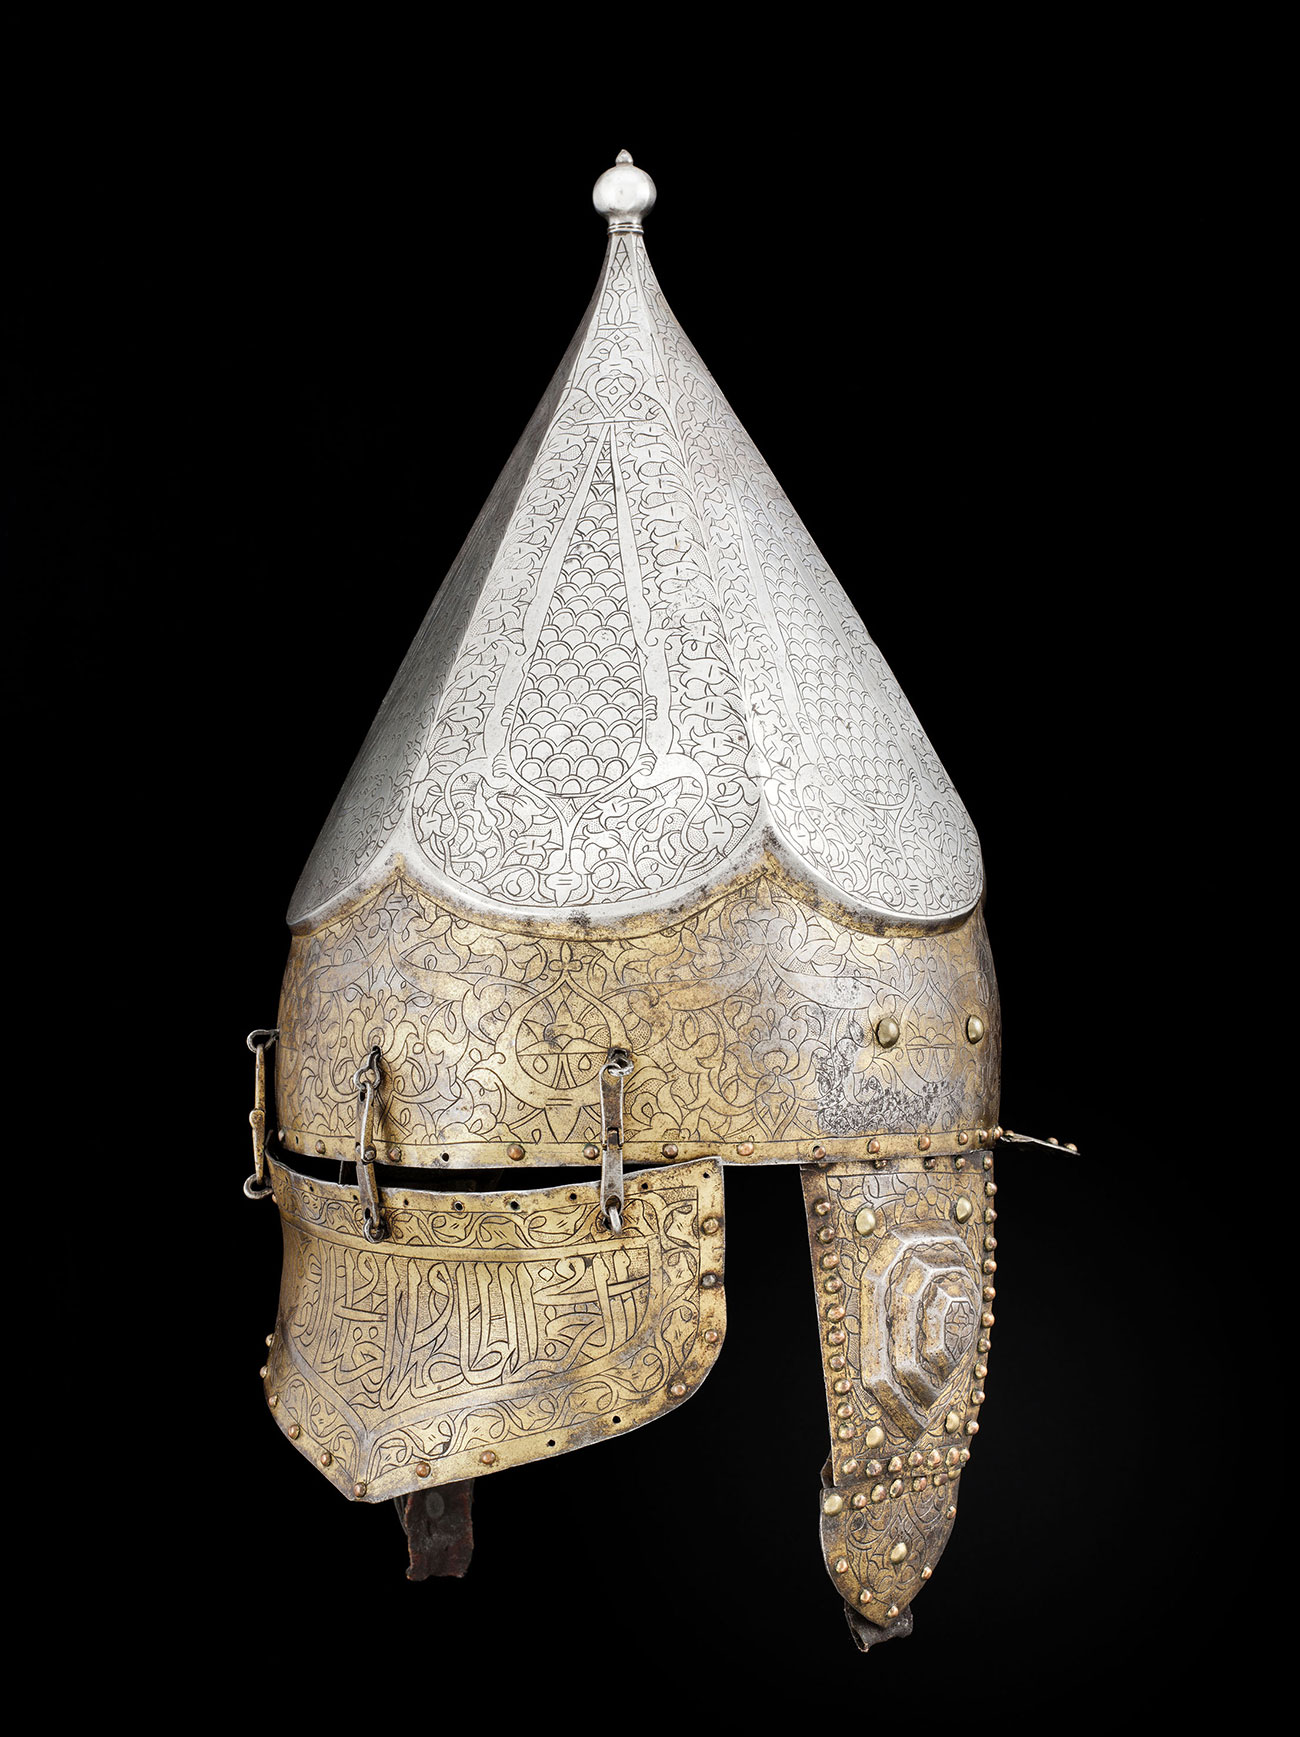 Casque ottoman © Musée de l'Armée, Dist. RMN-Grand Palais_Emilie Cambier